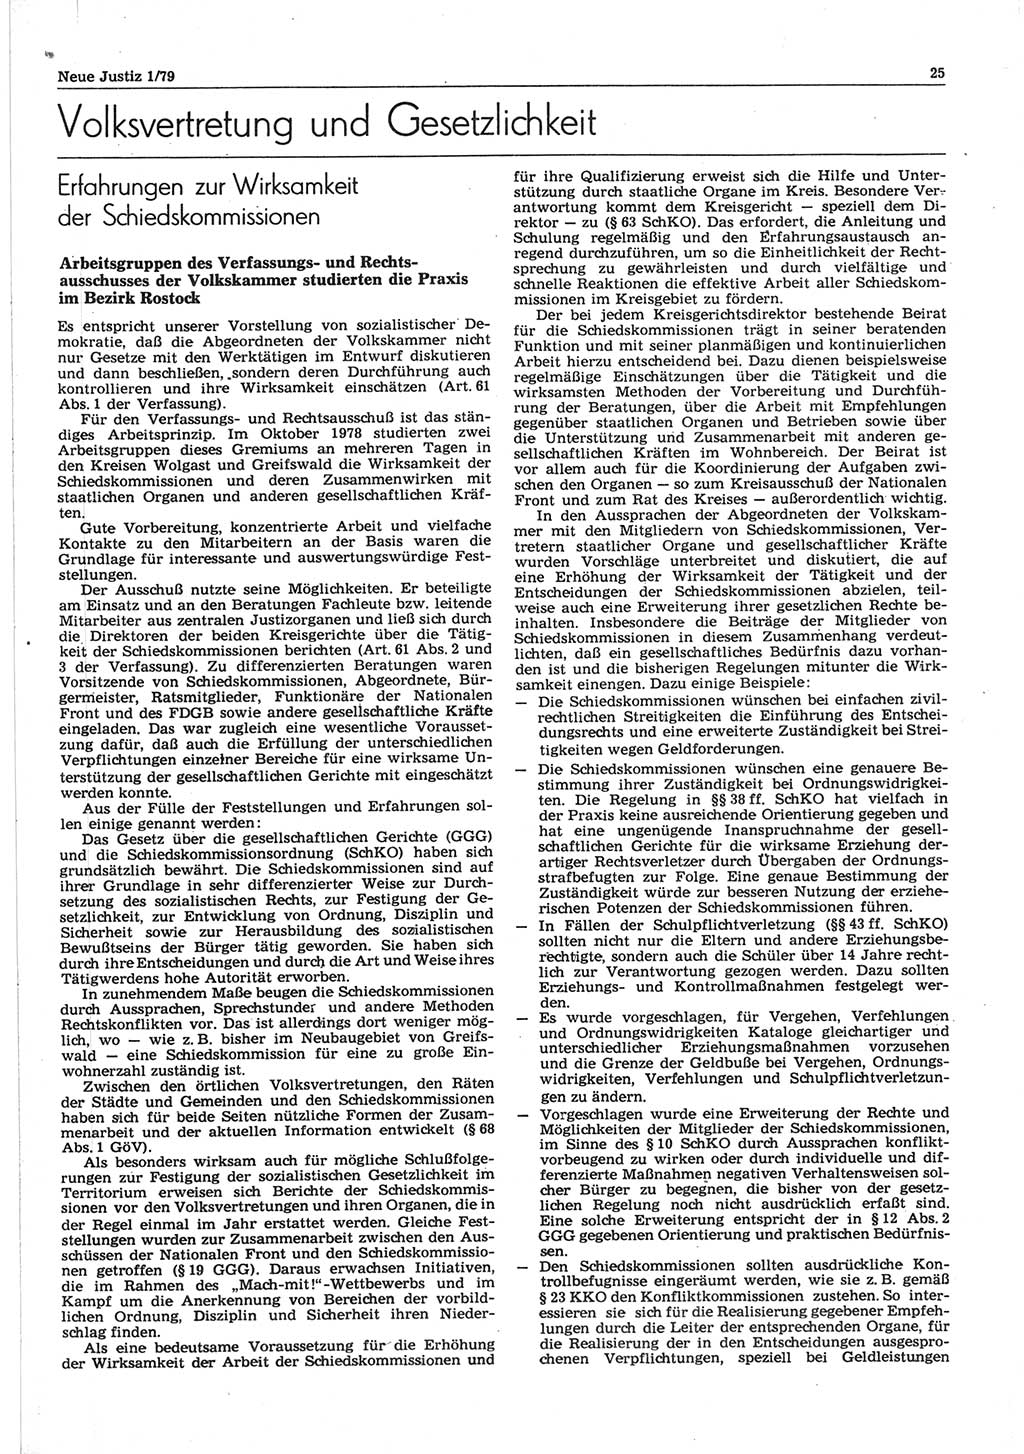 Neue Justiz (NJ), Zeitschrift für sozialistisches Recht und Gesetzlichkeit [Deutsche Demokratische Republik (DDR)], 33. Jahrgang 1979, Seite 25 (NJ DDR 1979, S. 25)